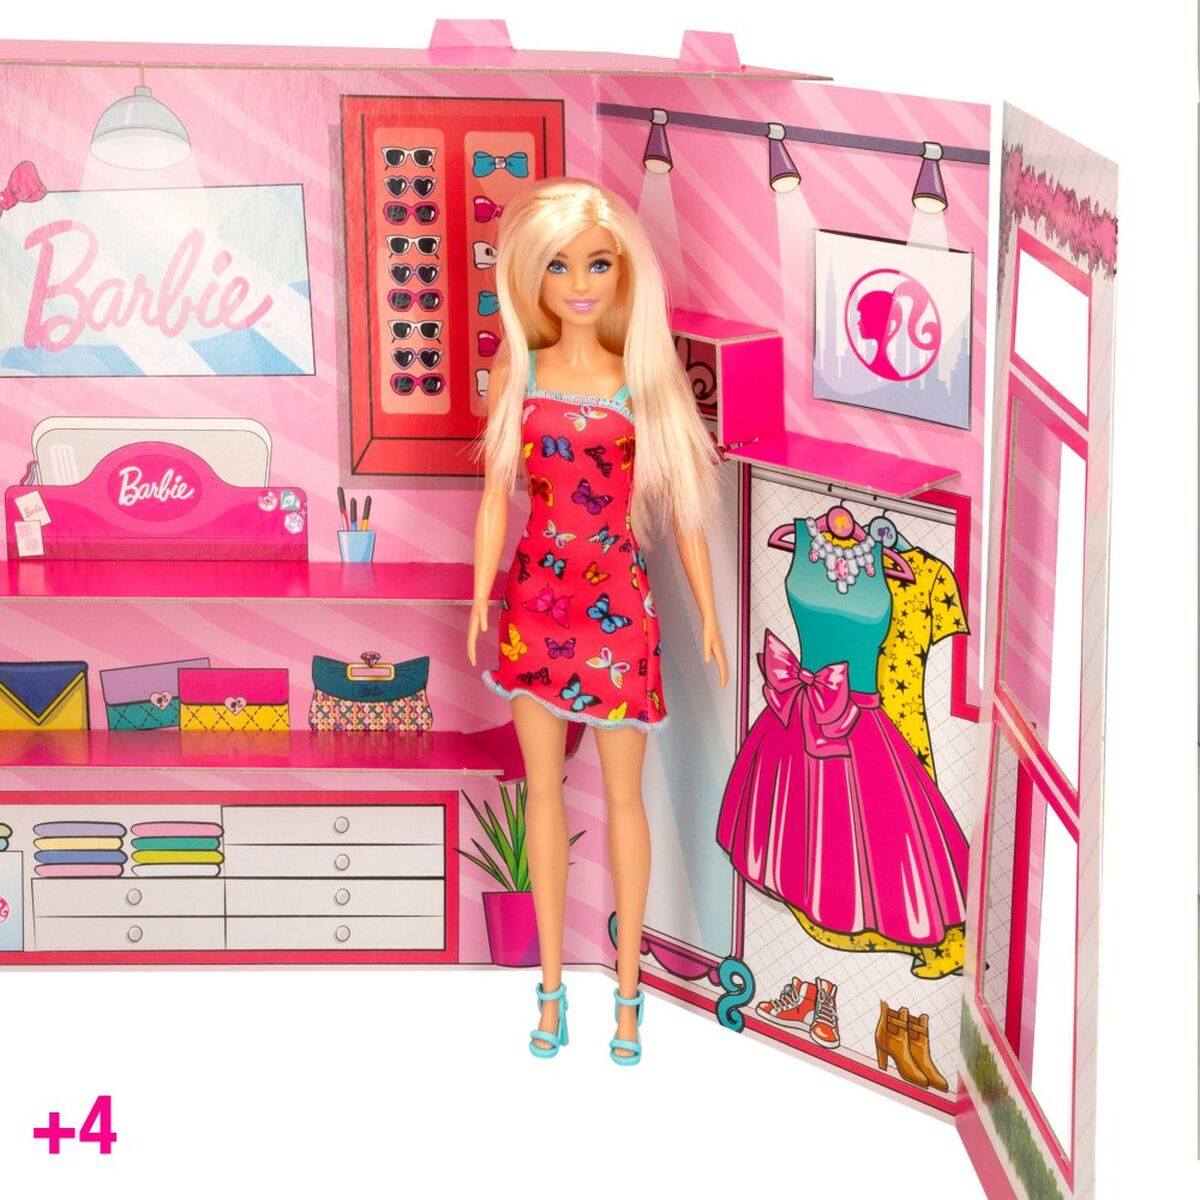 Playset Barbie Fashion Boutique 9 Pezzi 6,5 x 29,5 x 3,5 cm - Disponibile in 3-4 giorni lavorativi